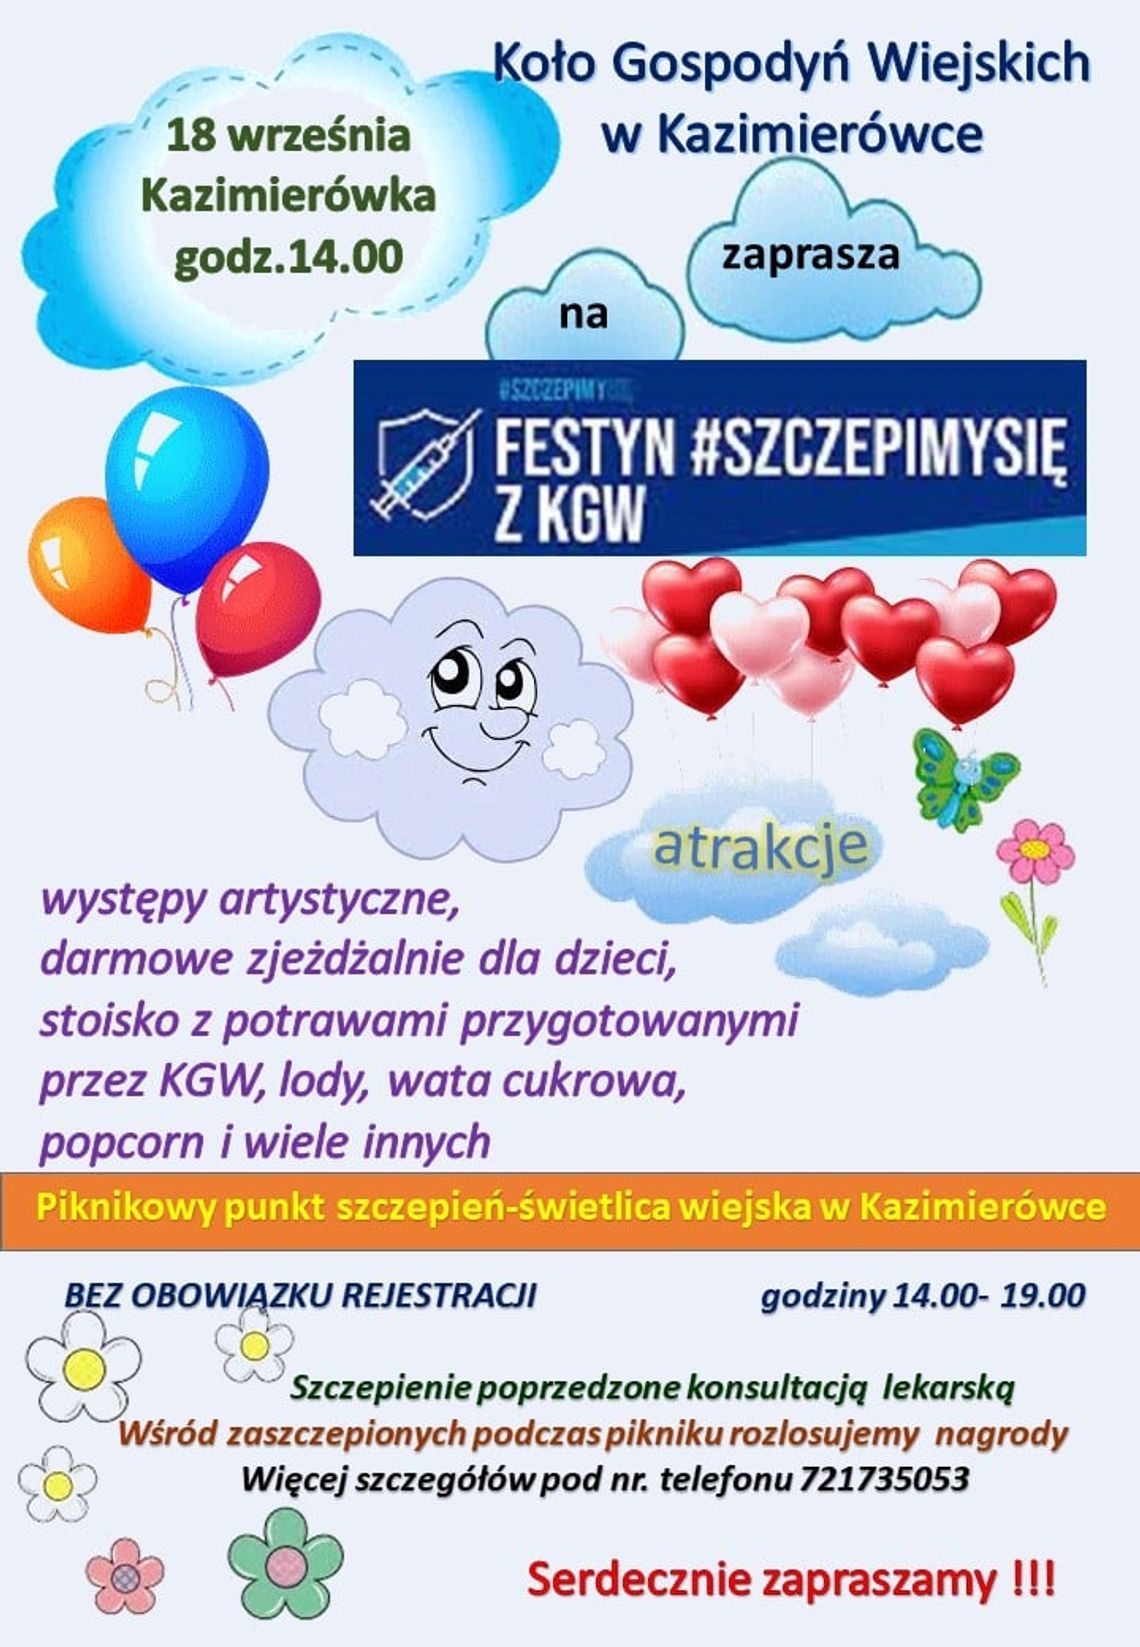 Kazimierówka: Festiwal #Szczepimy się z KGW